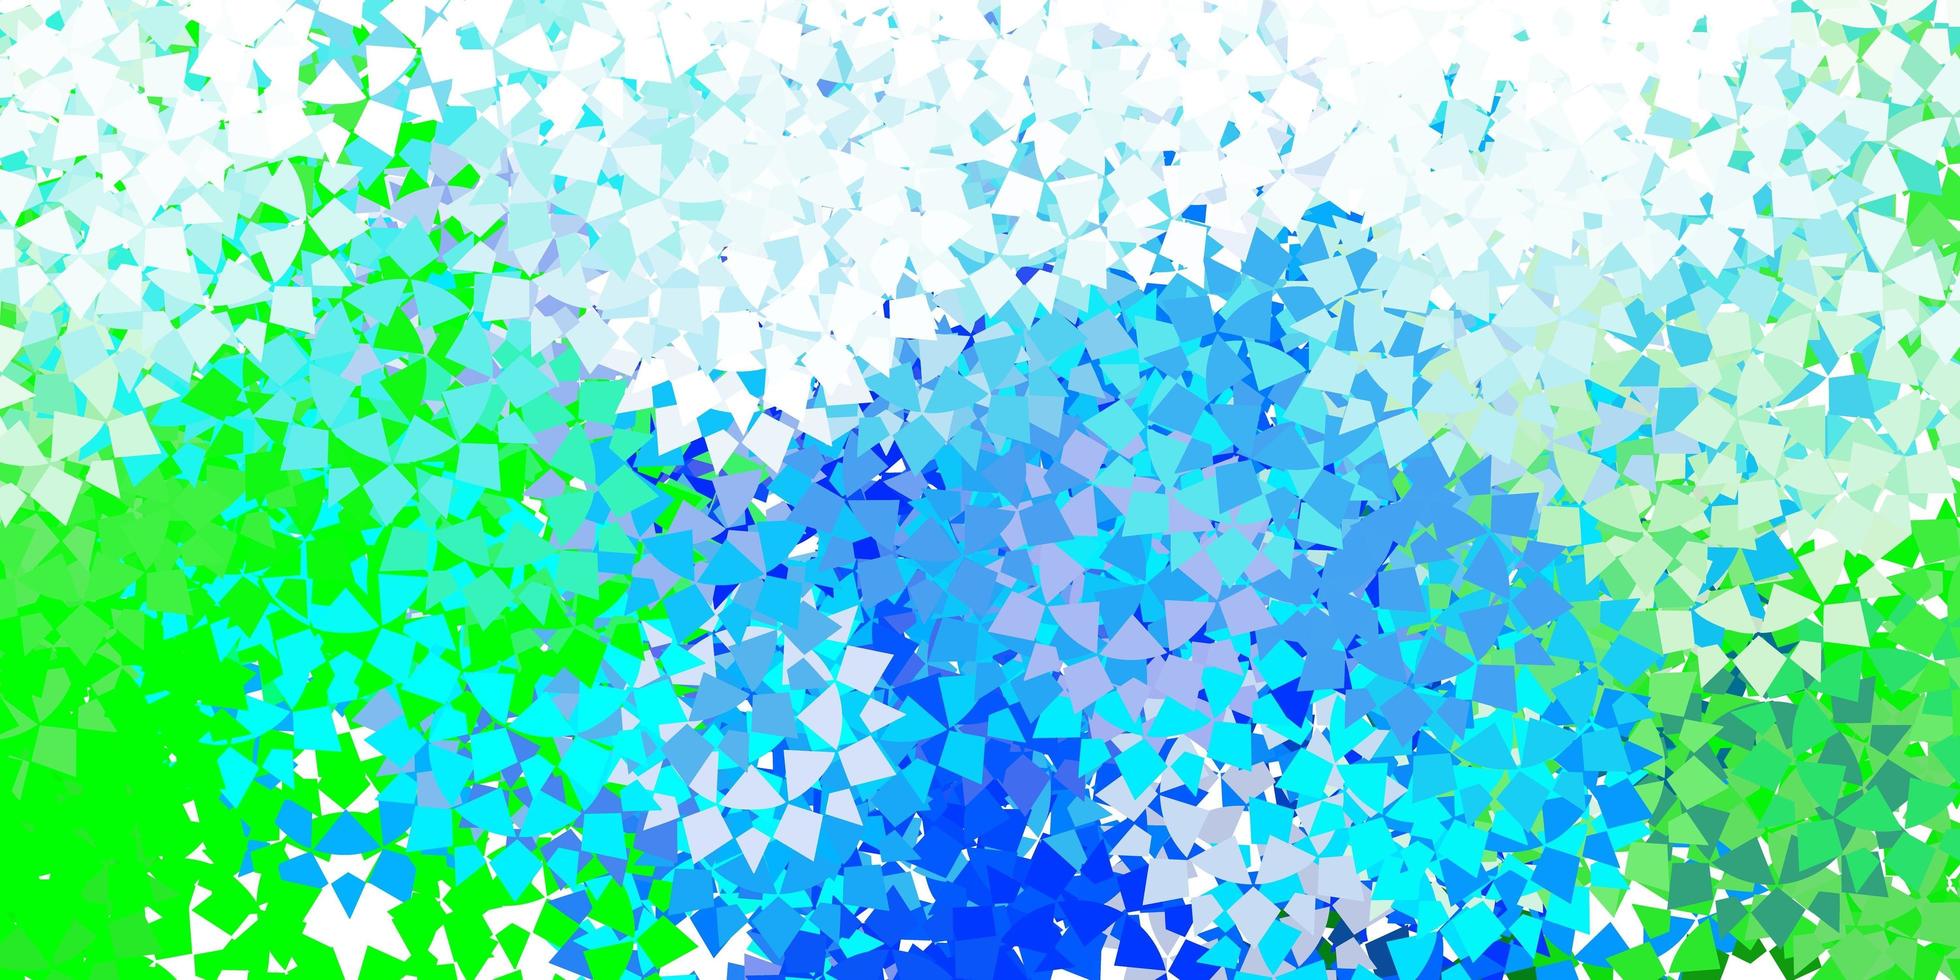 lichtblauwe vector sjabloon met kristallen, driehoeken.